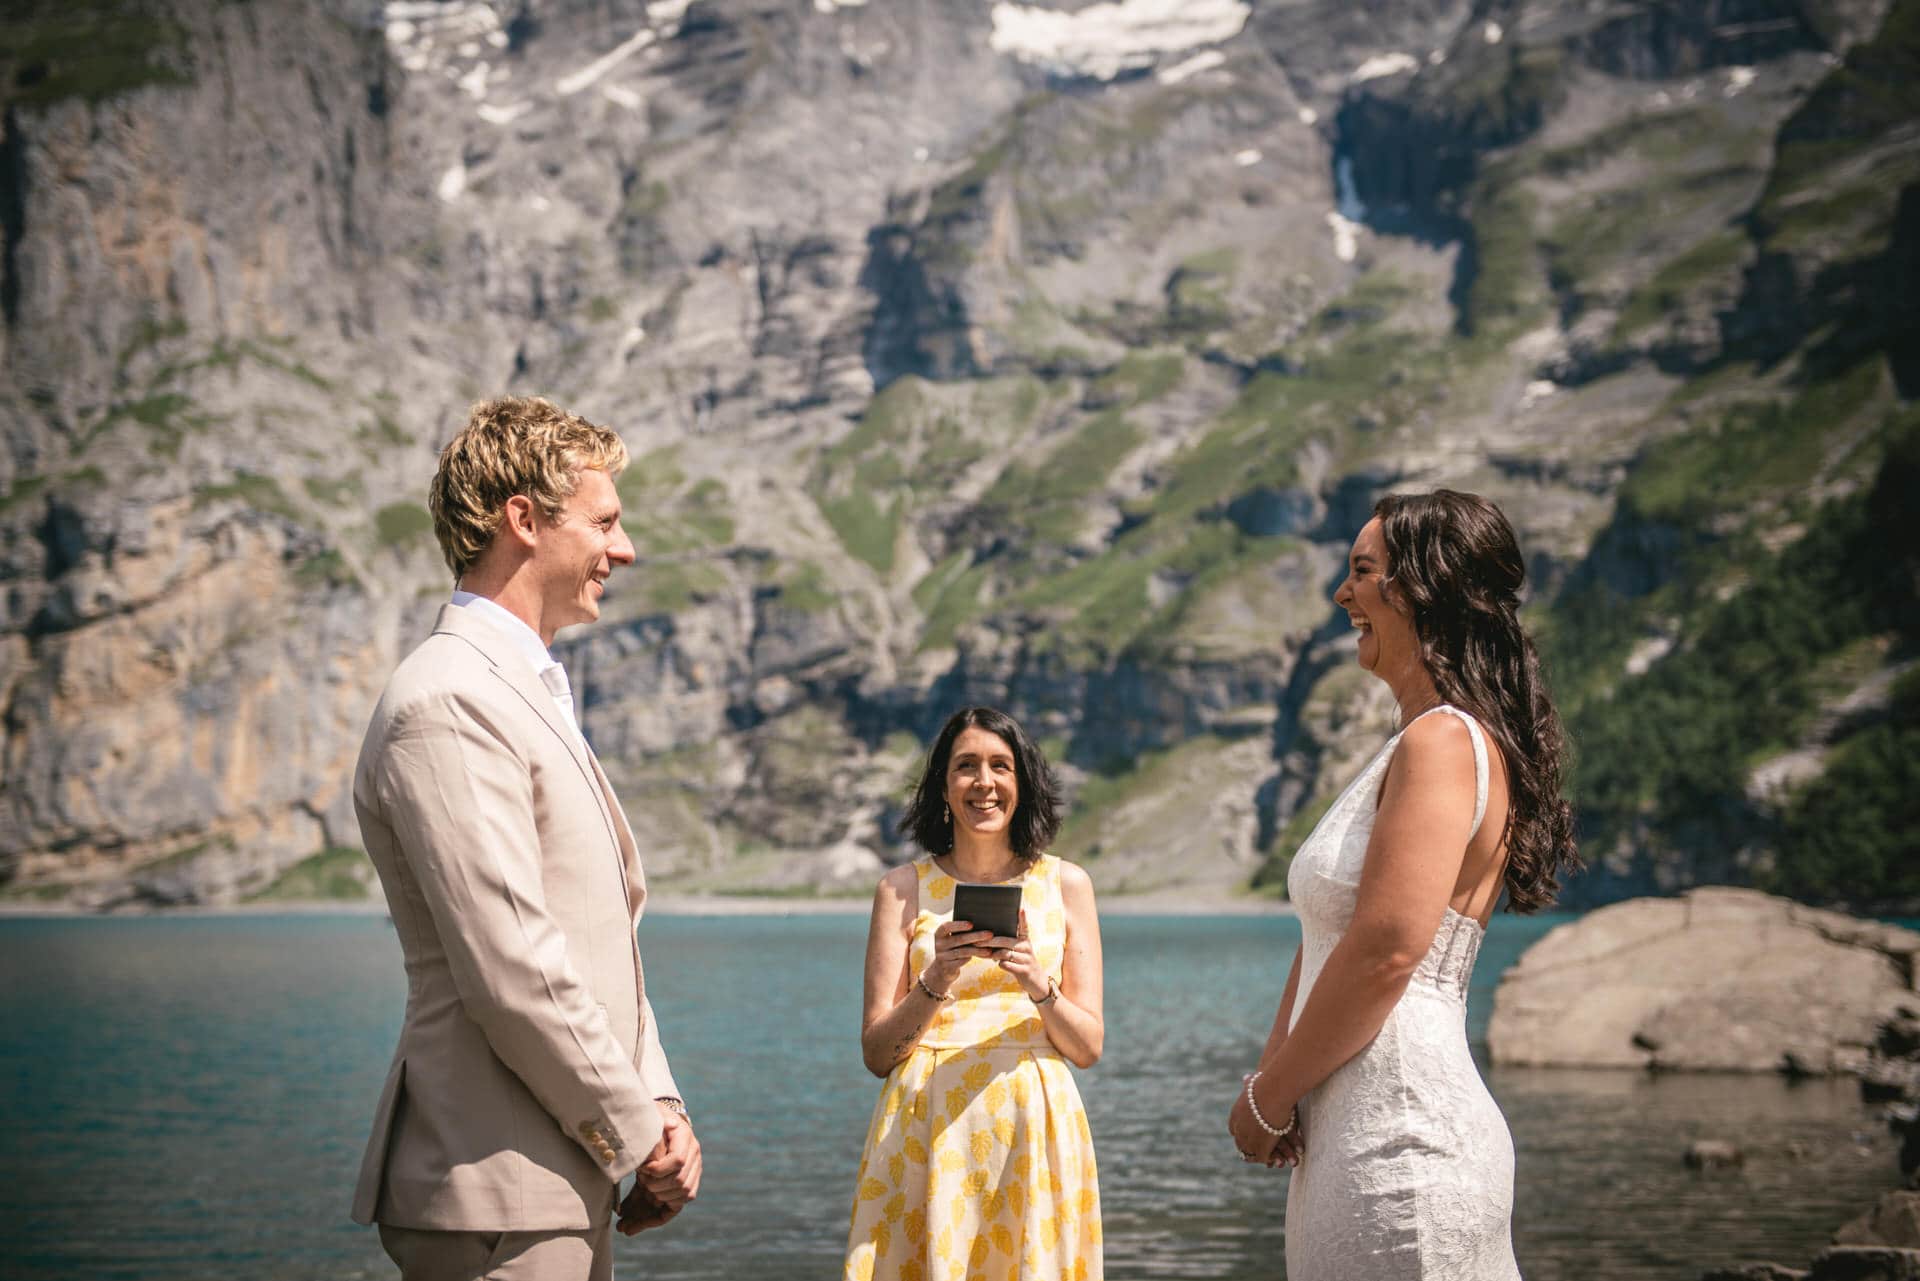 Alpine beauty as love's backdrop - hiking elopement in Switzerland.